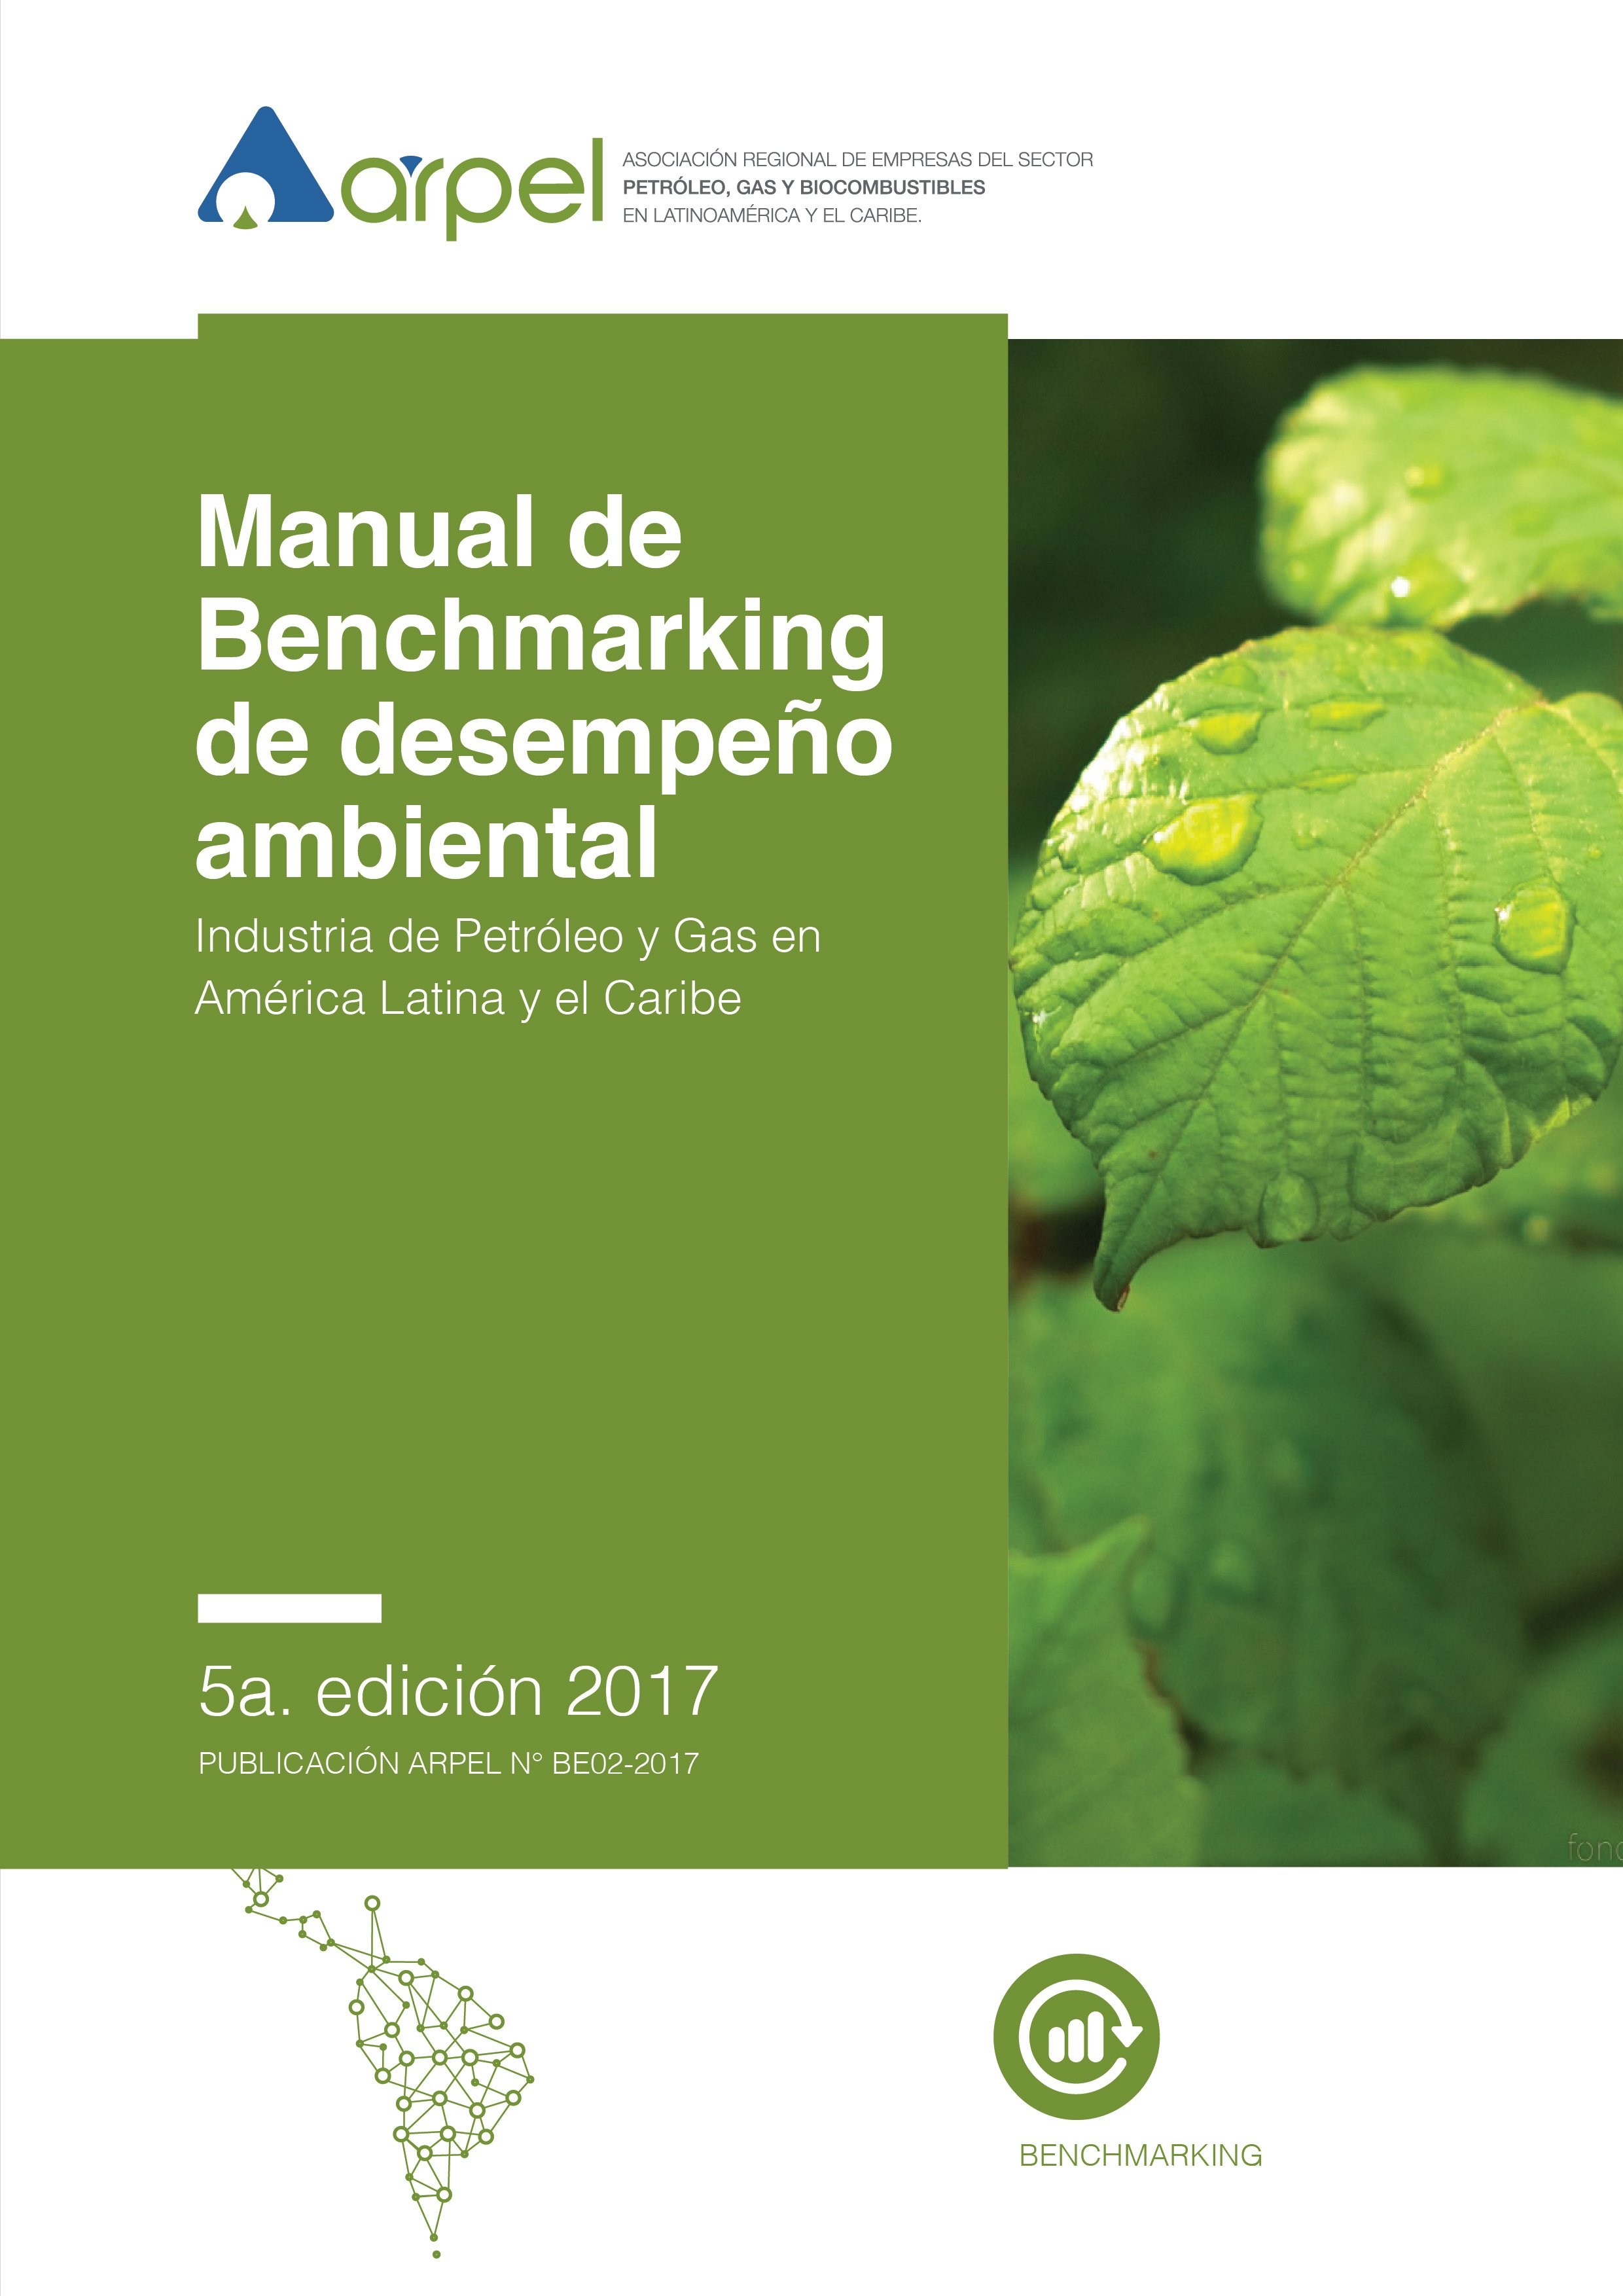 Manual de Benchmarking de Desempeño Ambiental (5a ed. 2017)